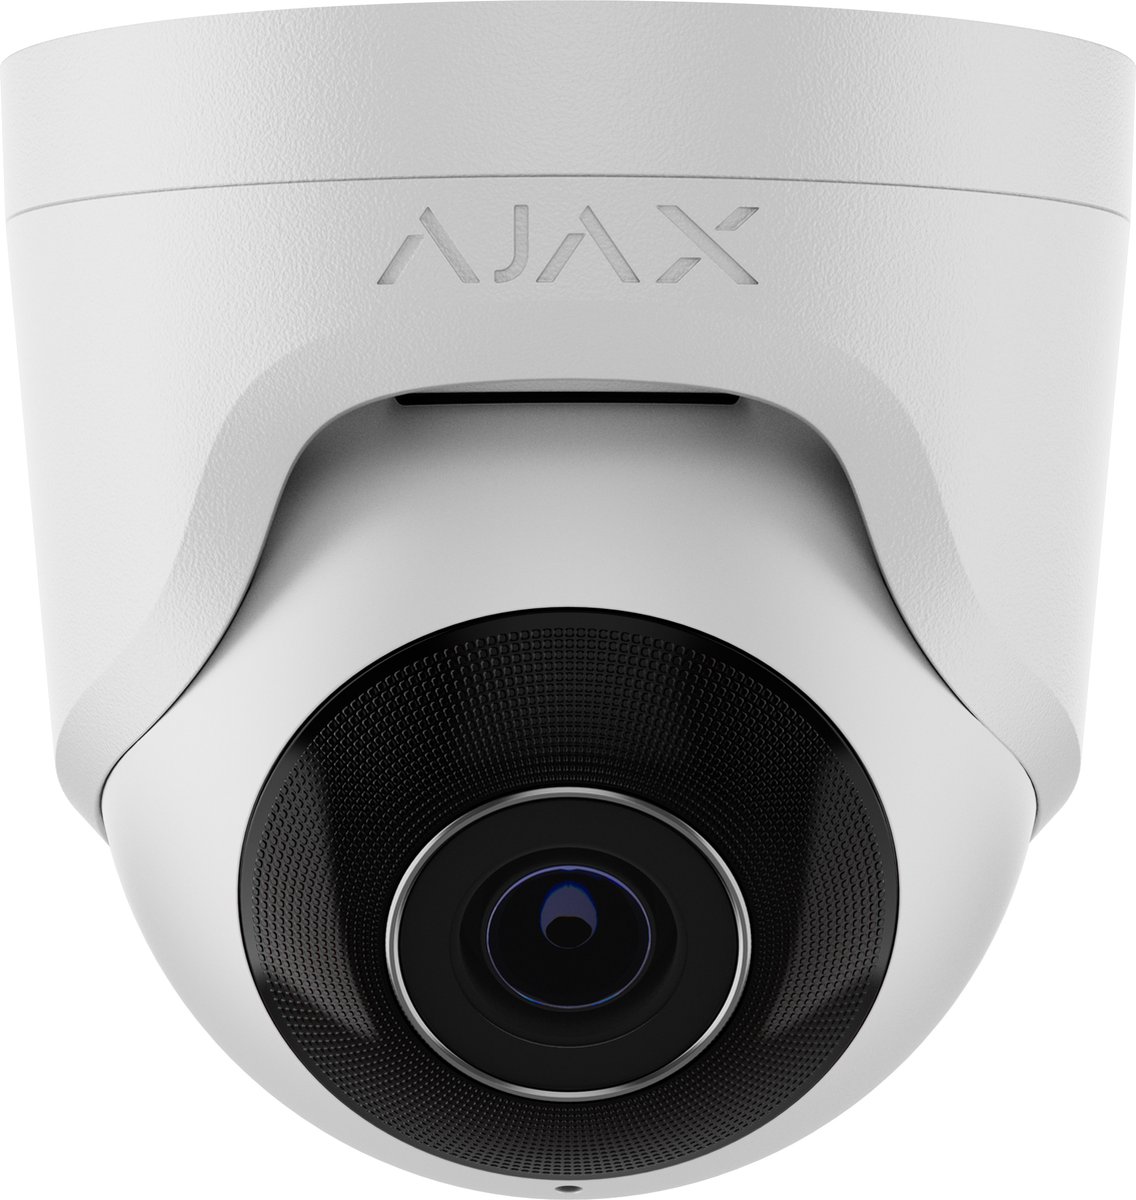 Ajax TurretCam 8MP Lens 2.8 Wit